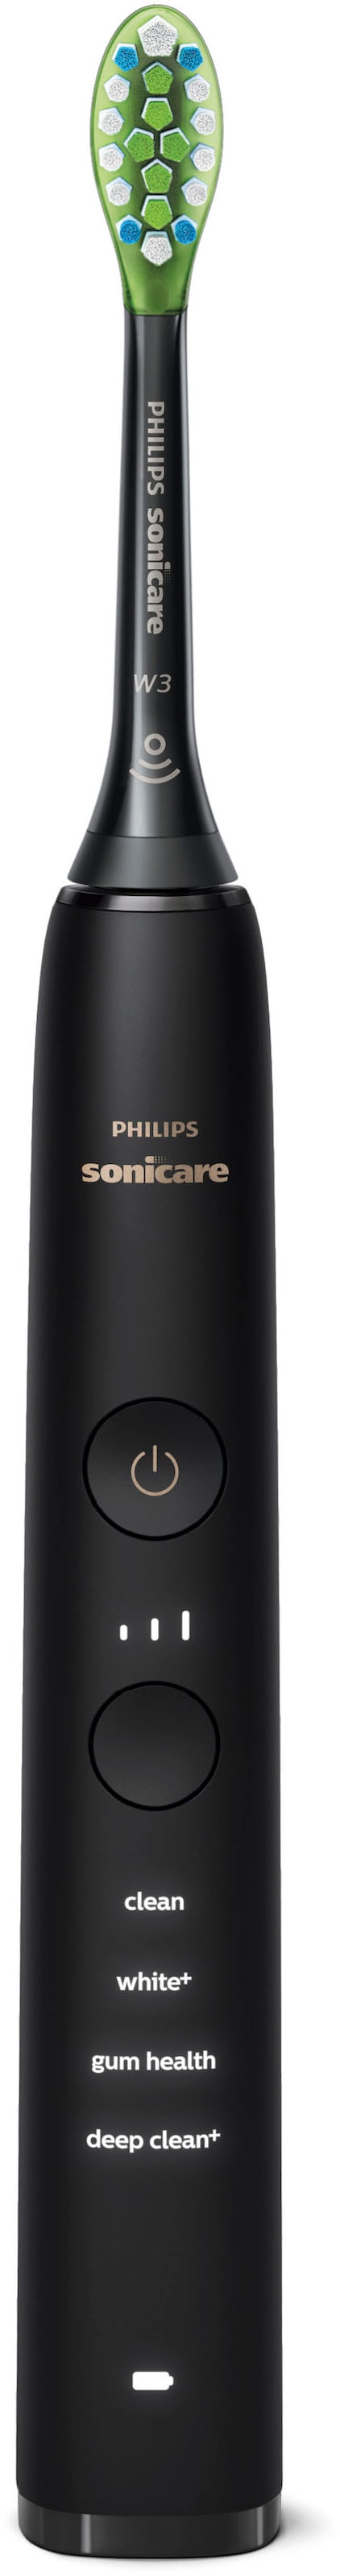 Philips Sonicare Elektrische Zahnbürste »DiamondClean 9000 HX9913/18«, 2 St. Aufsteckbürsten, mit integriertem Drücksensor, 4 Putzprogramme und 3 Intensitätsstufen